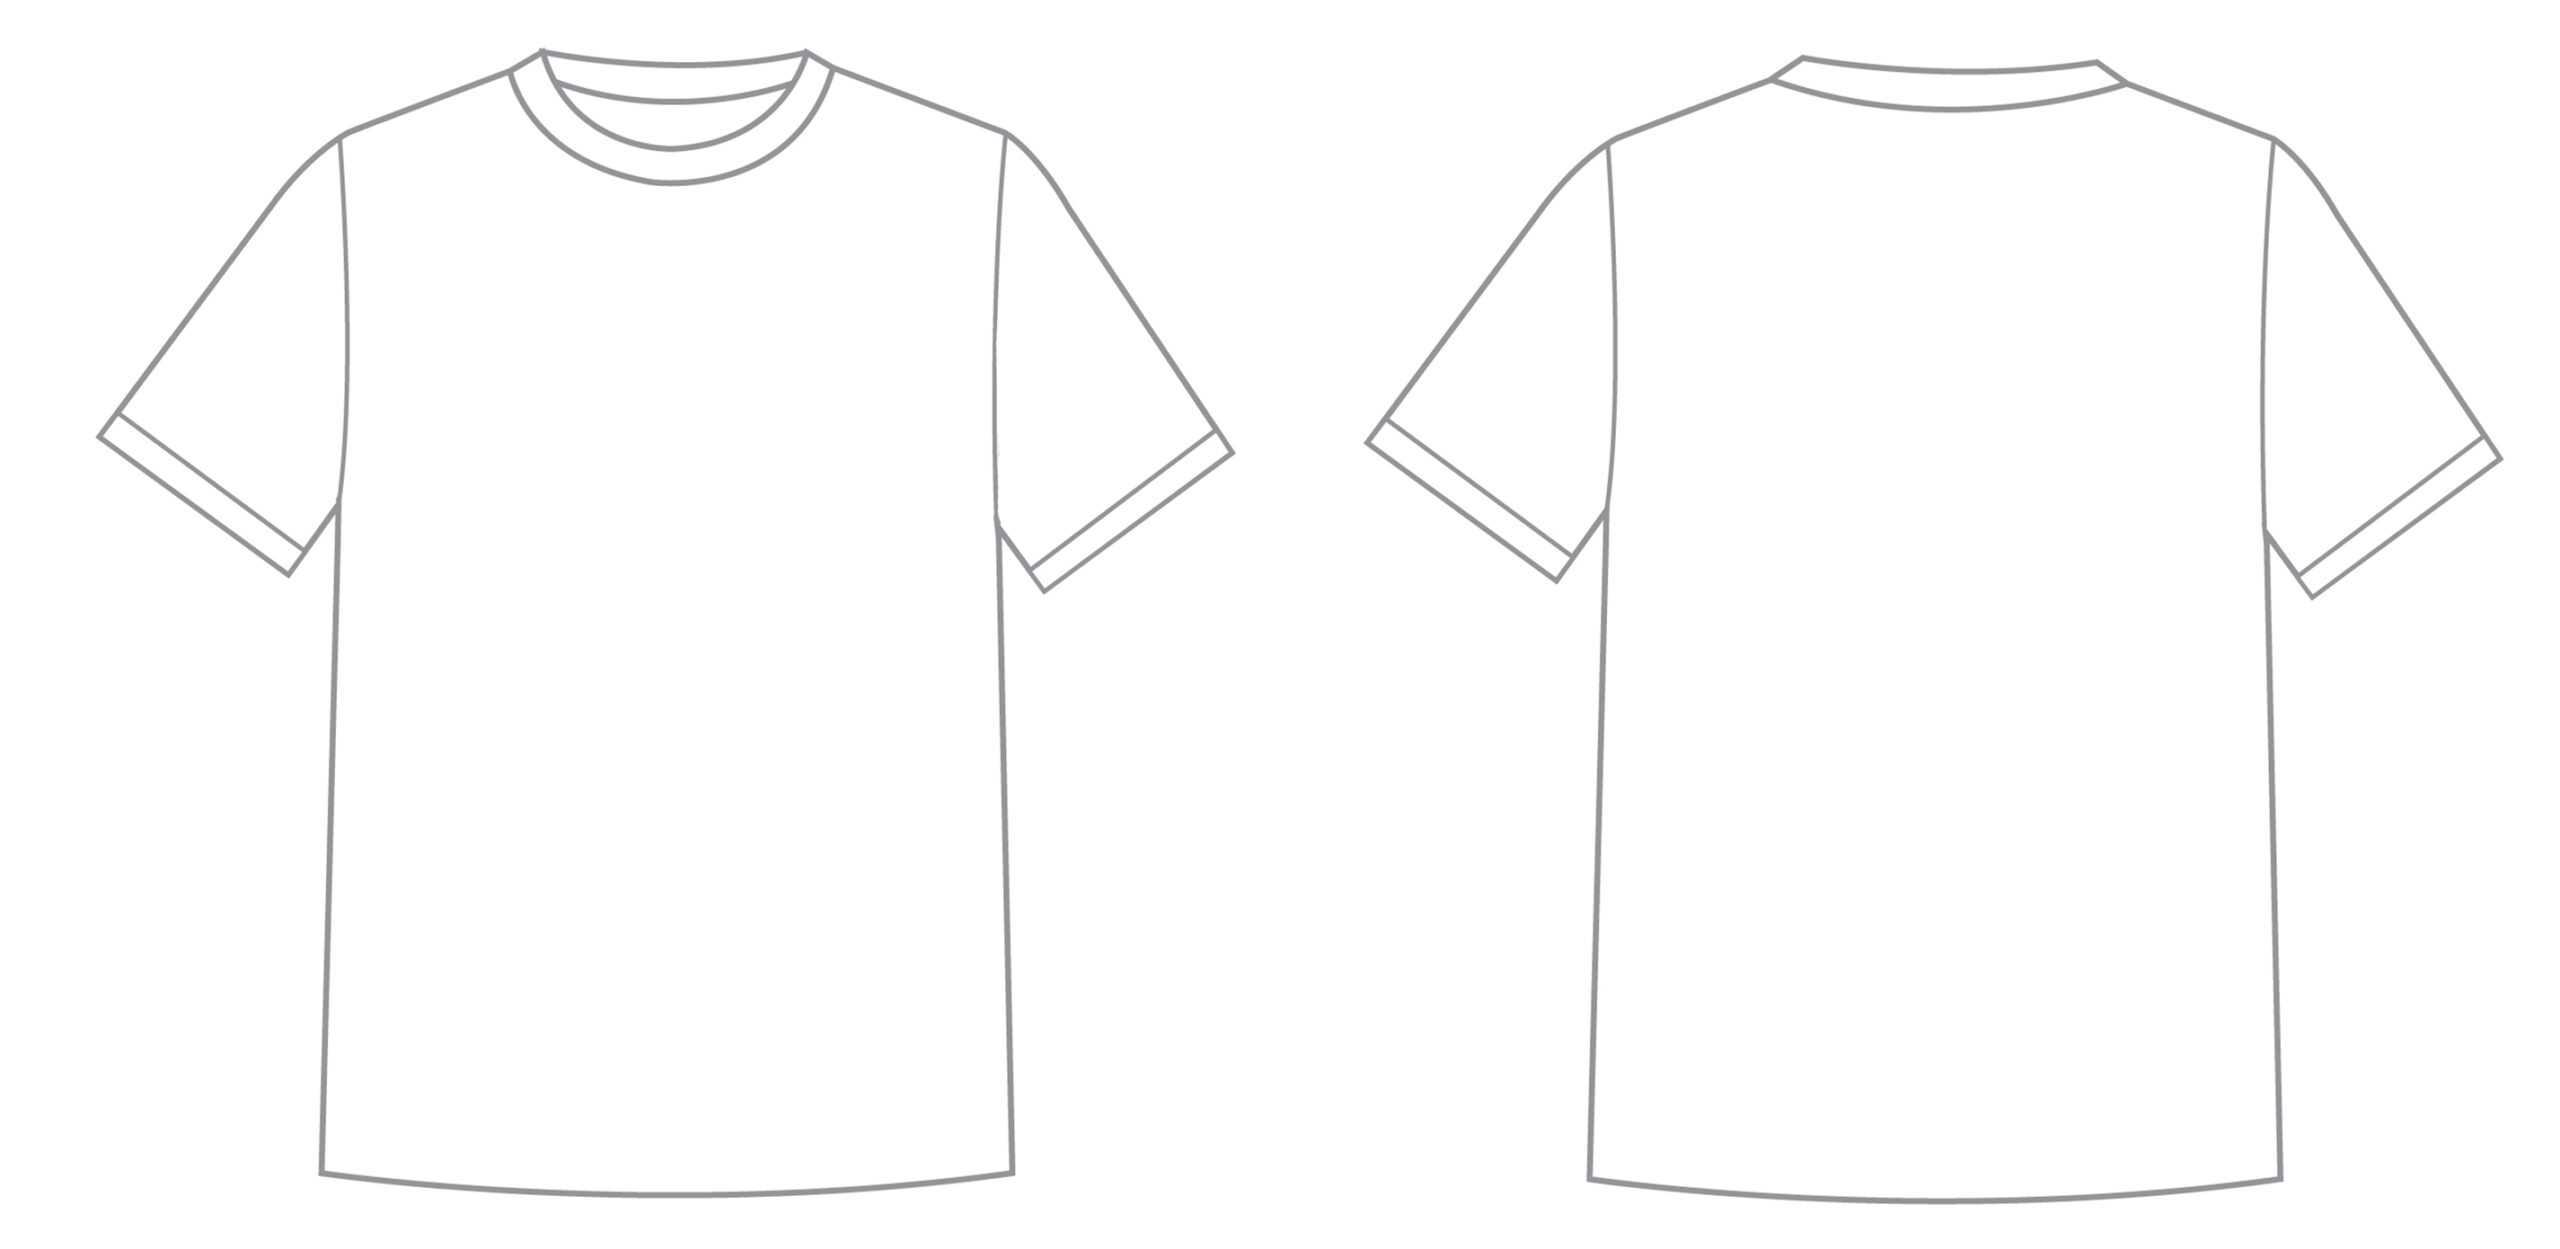 Blank Tshirt Template Pdf | Toffee Art Throughout Blank Tshirt Template Pdf